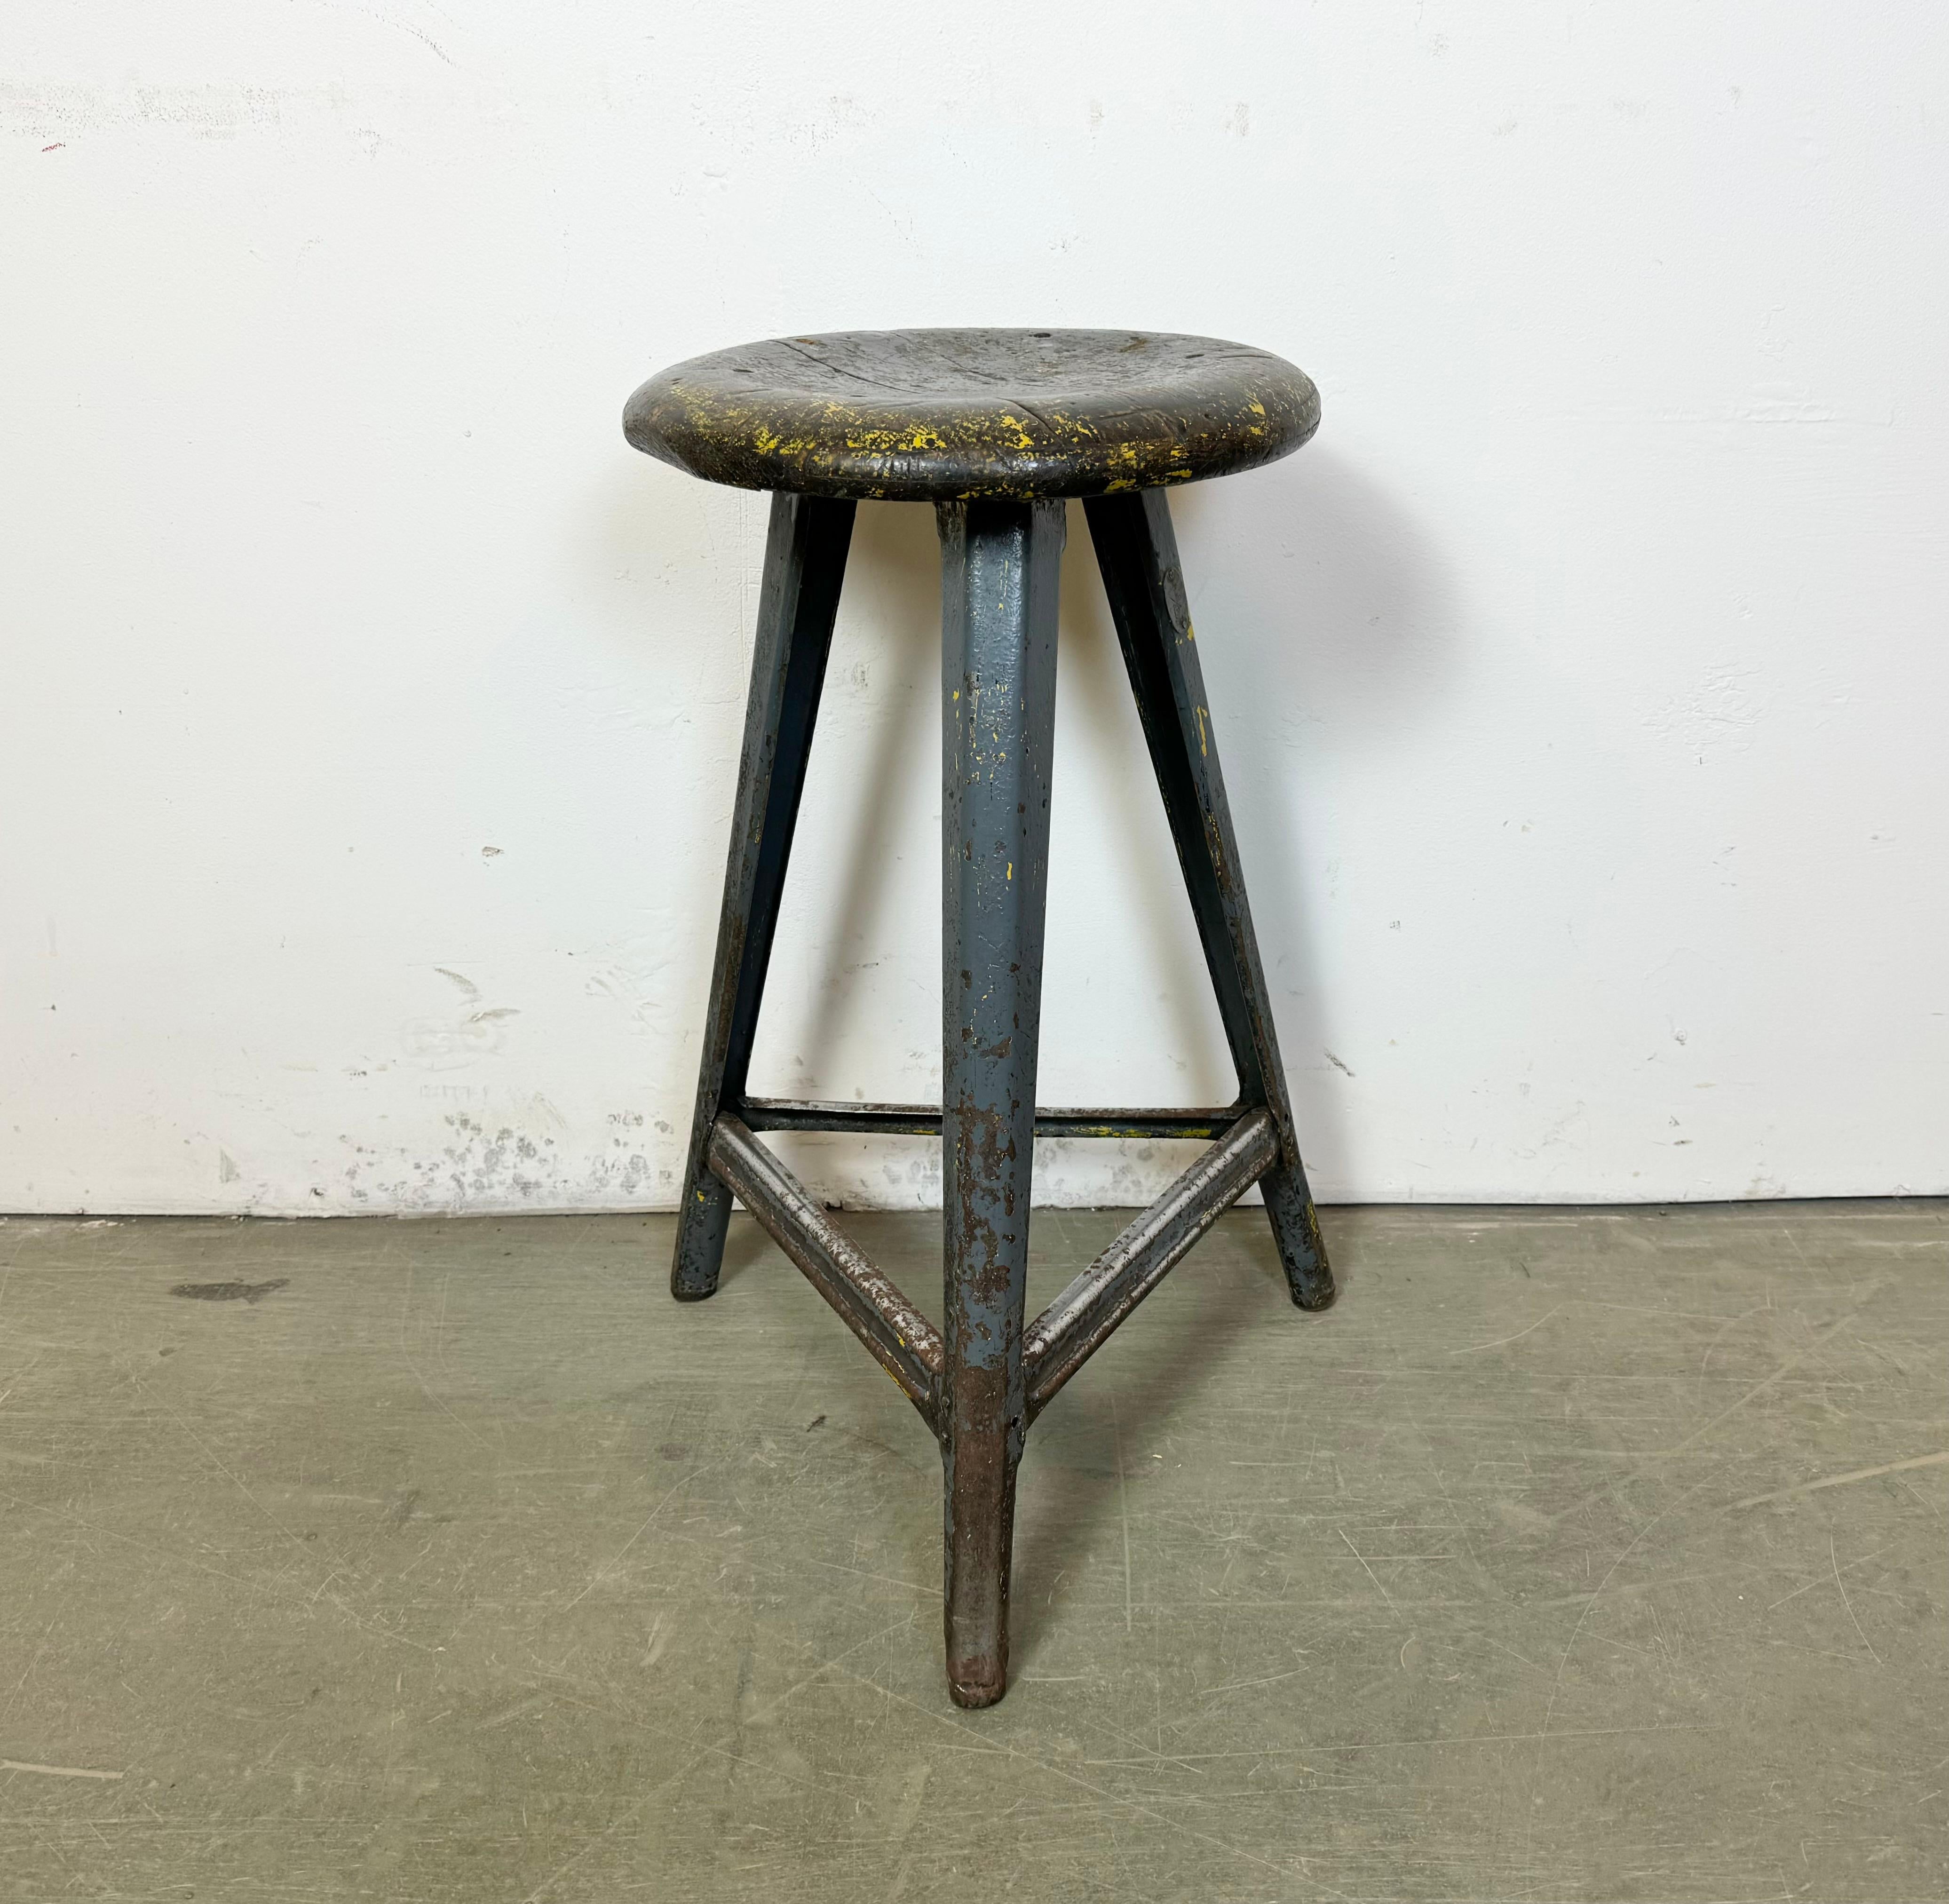 Vintage-Industriehocker, hergestellt in der ehemaligen Tschechoslowakei in den 1960er Jahren. Sitz aus Holz und graues Metallgestell. Das Gewicht des Hockers beträgt 6 kg.